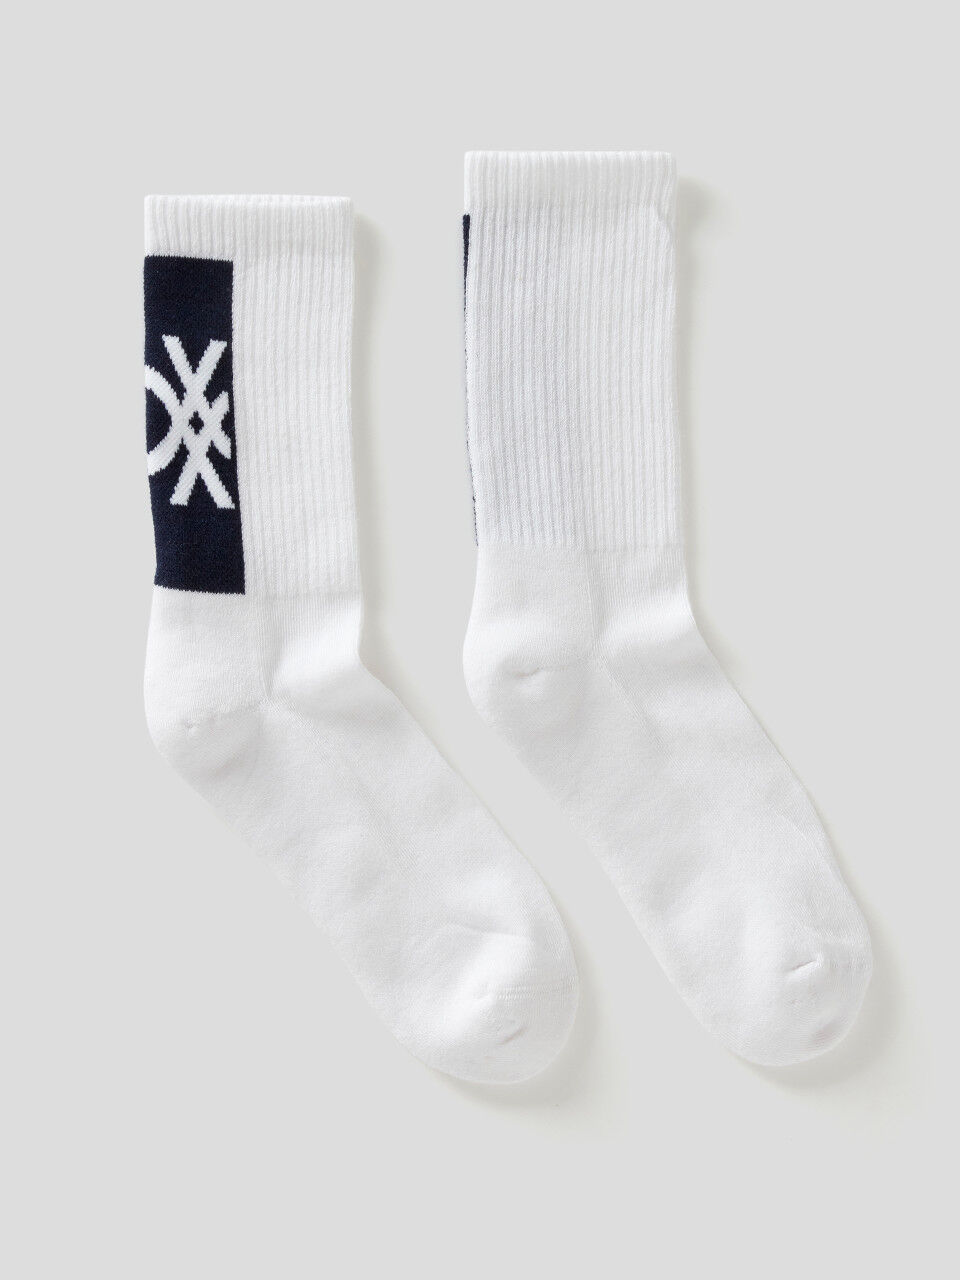 Socken in einer stretchigen Baumwollmischung mit Logo